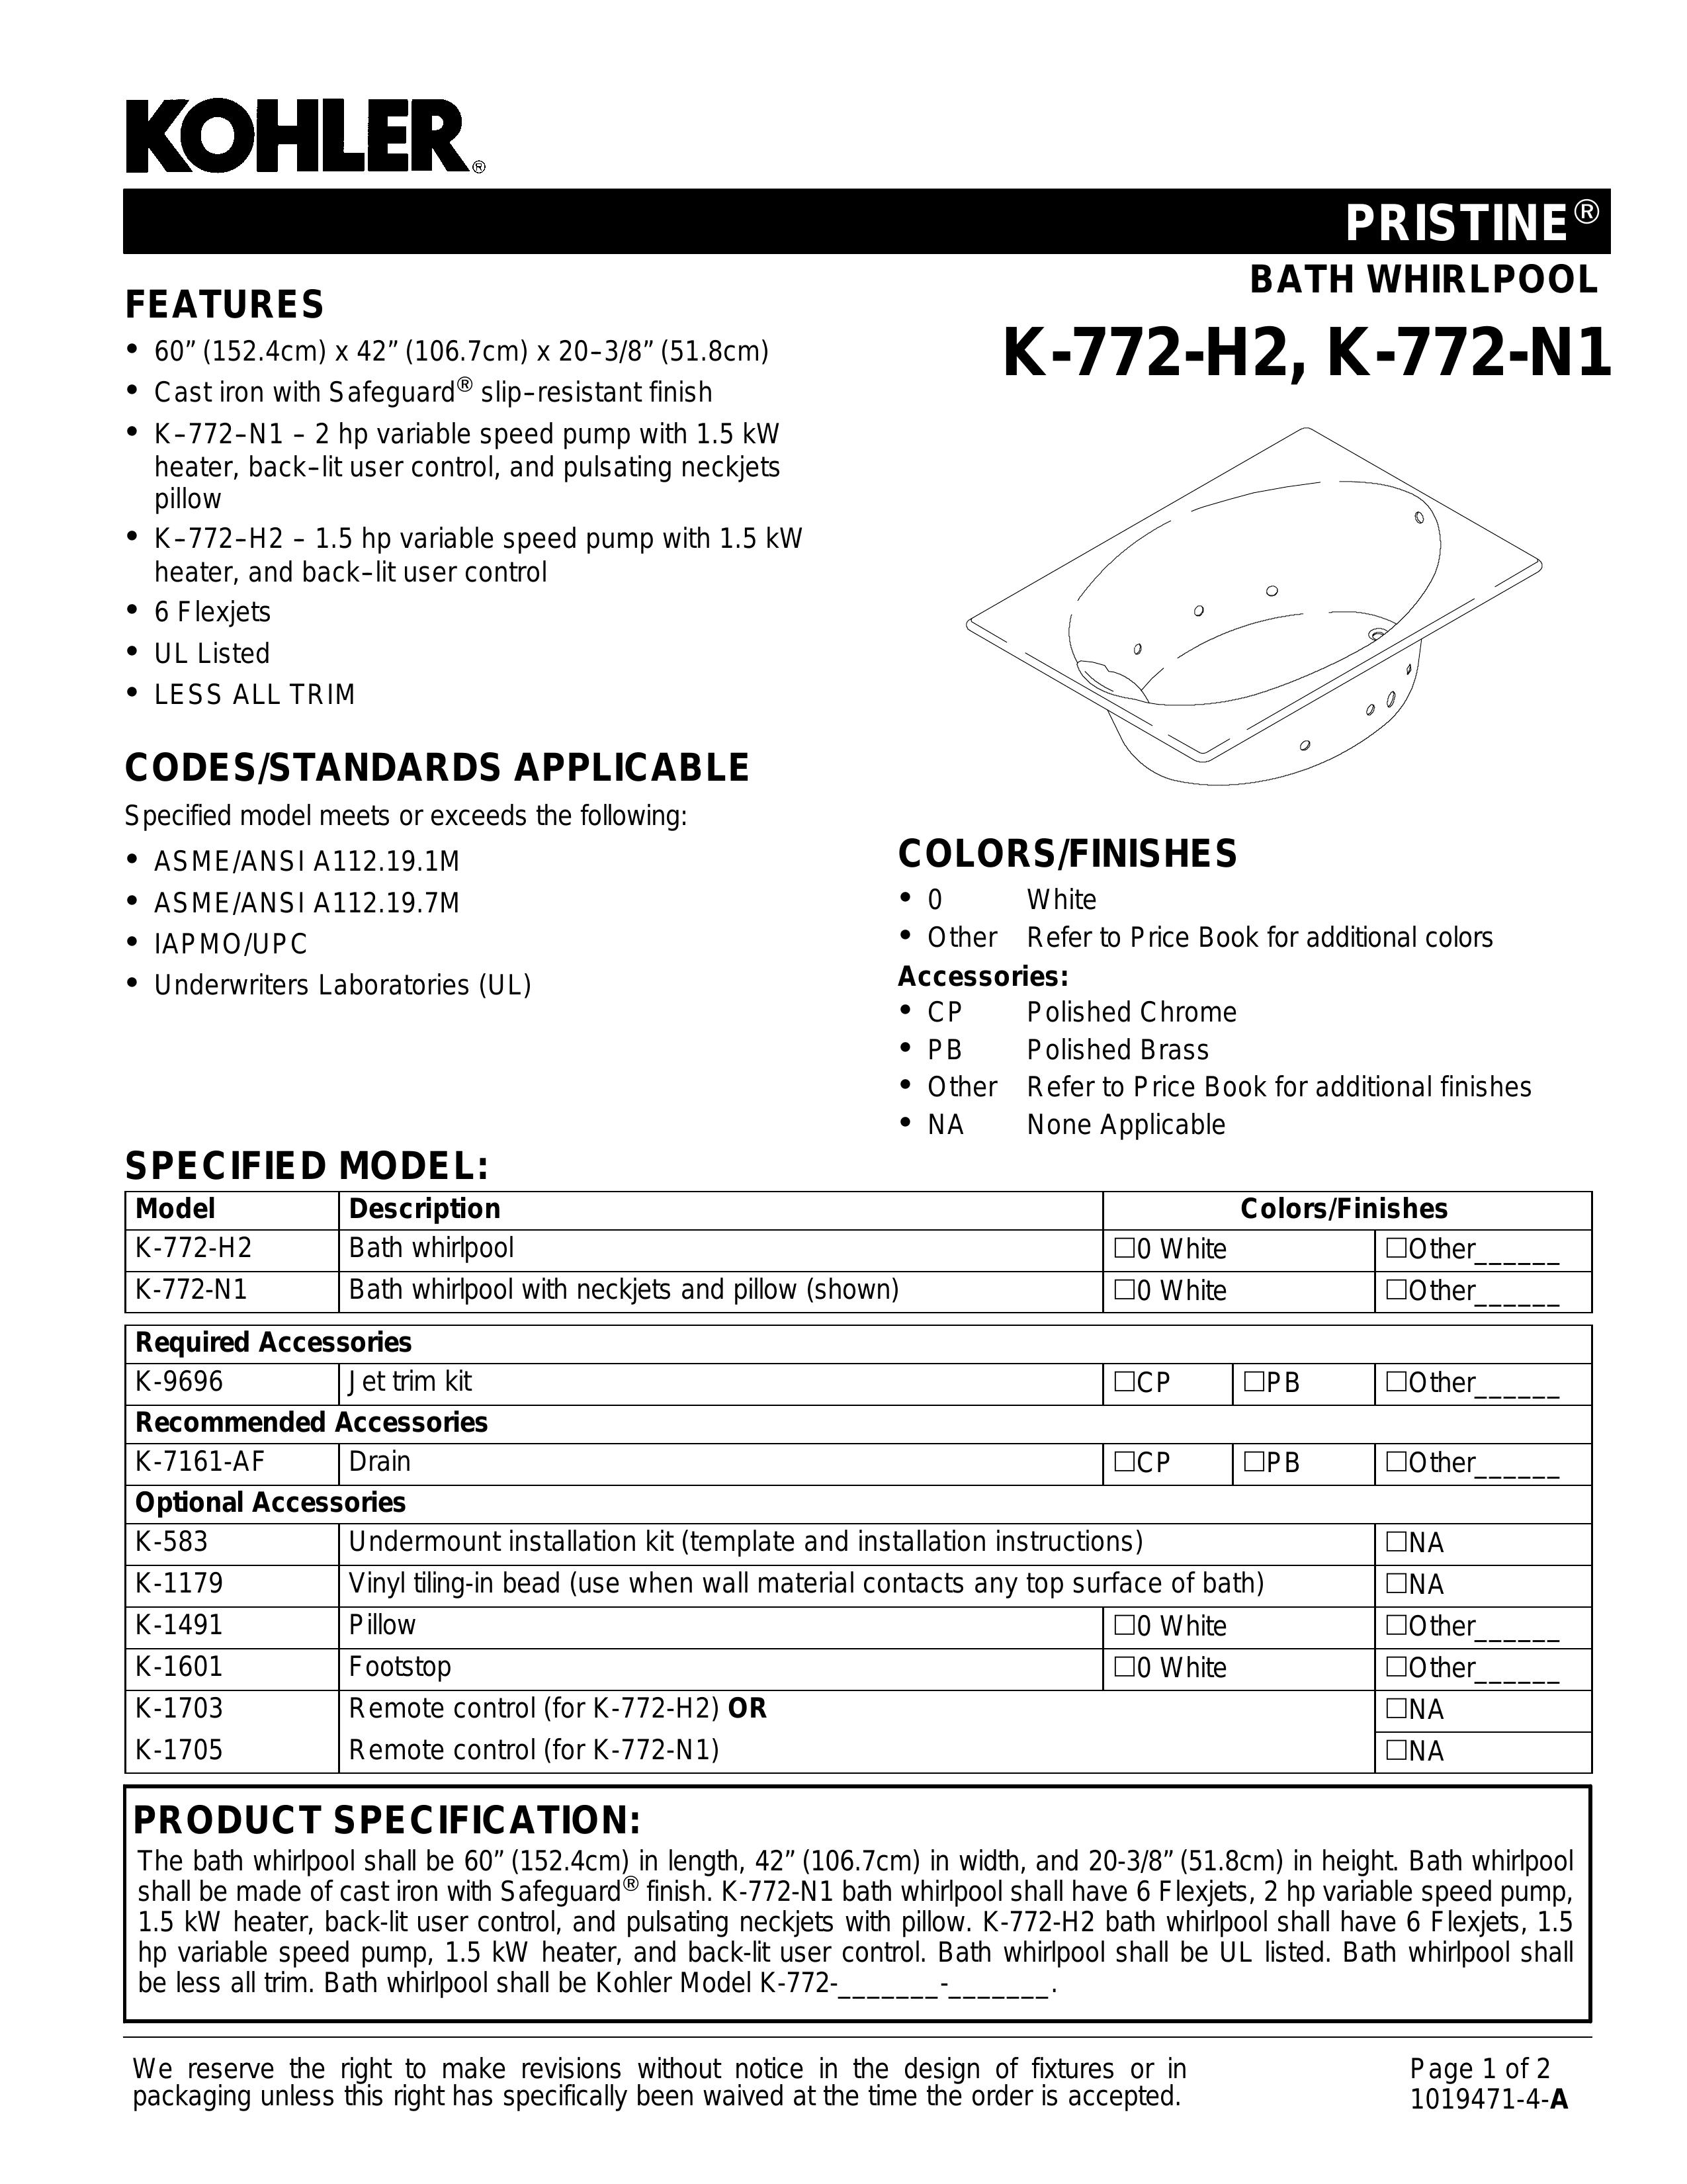 Kohler K-583 Hot Tub User Manual